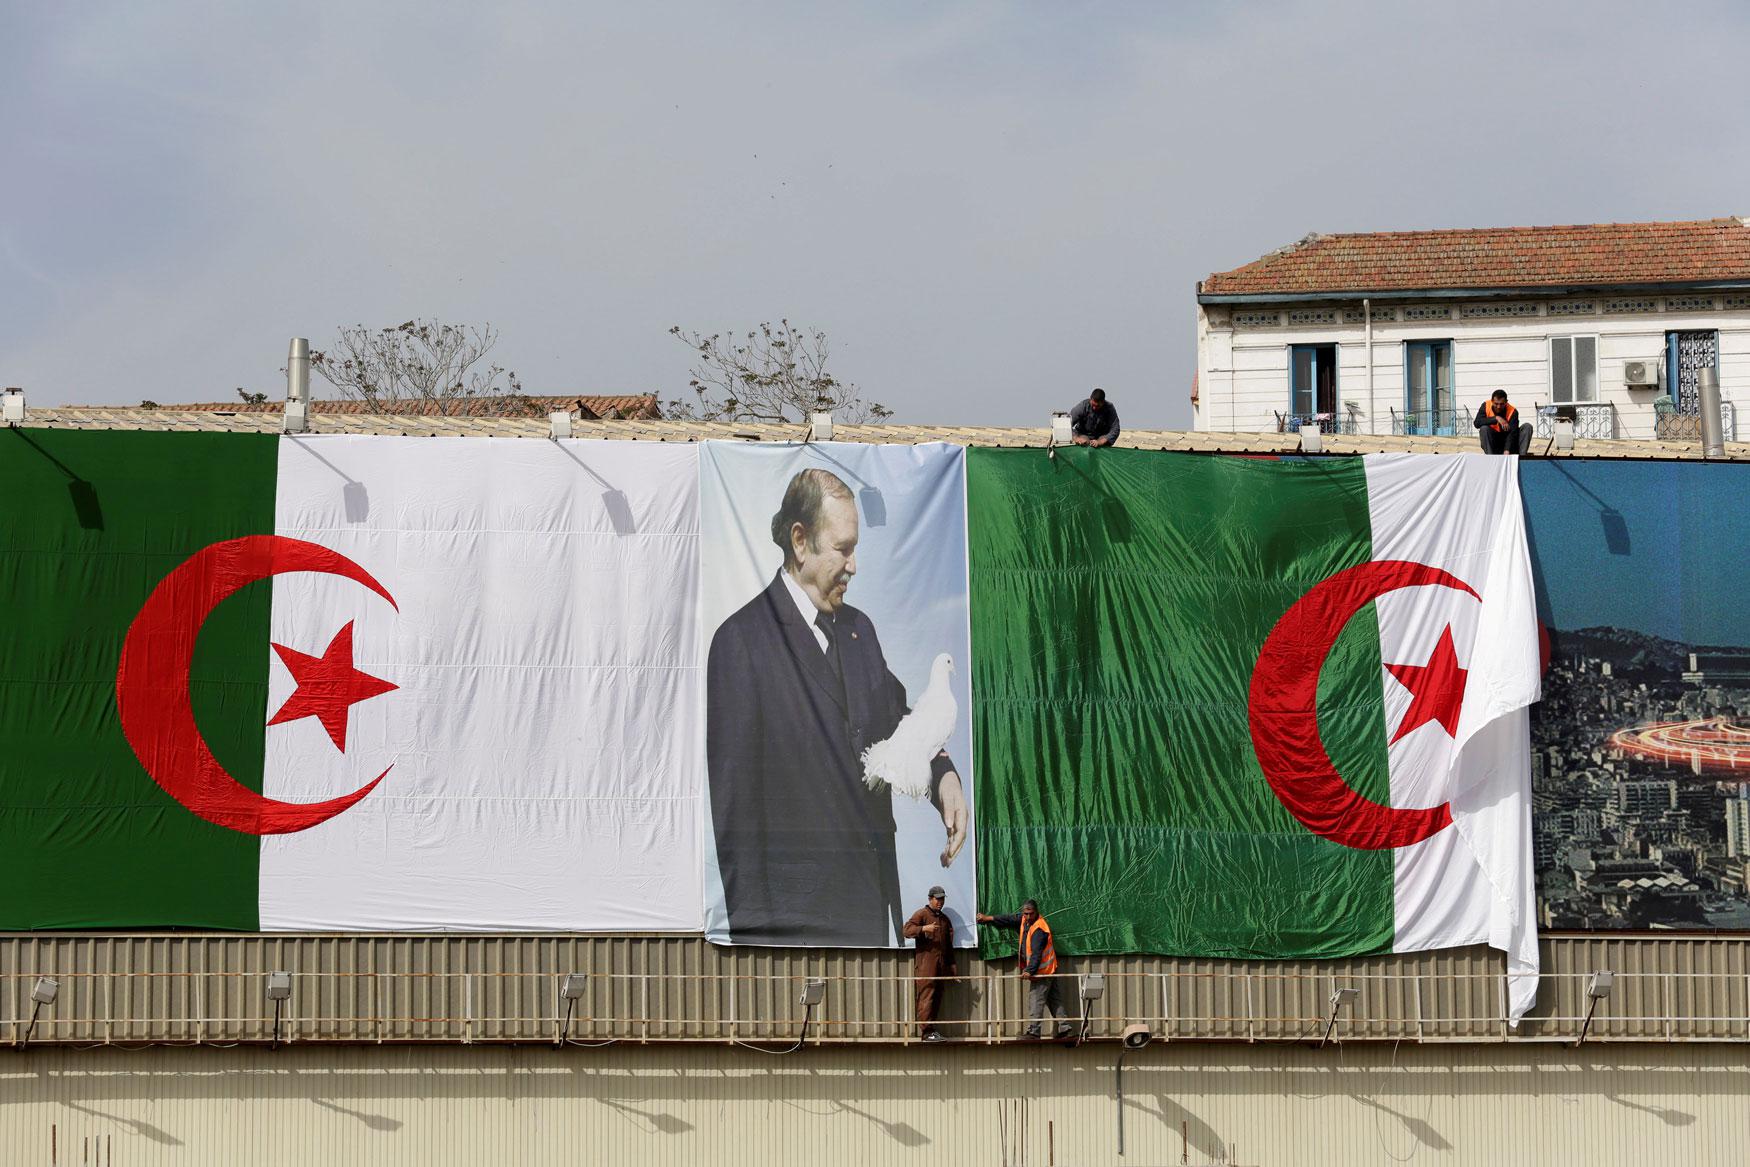 لافتة دعائية عملاقة لبوتفليقة في أحد شوارع الجزائر خلال الانتخابات السابقة